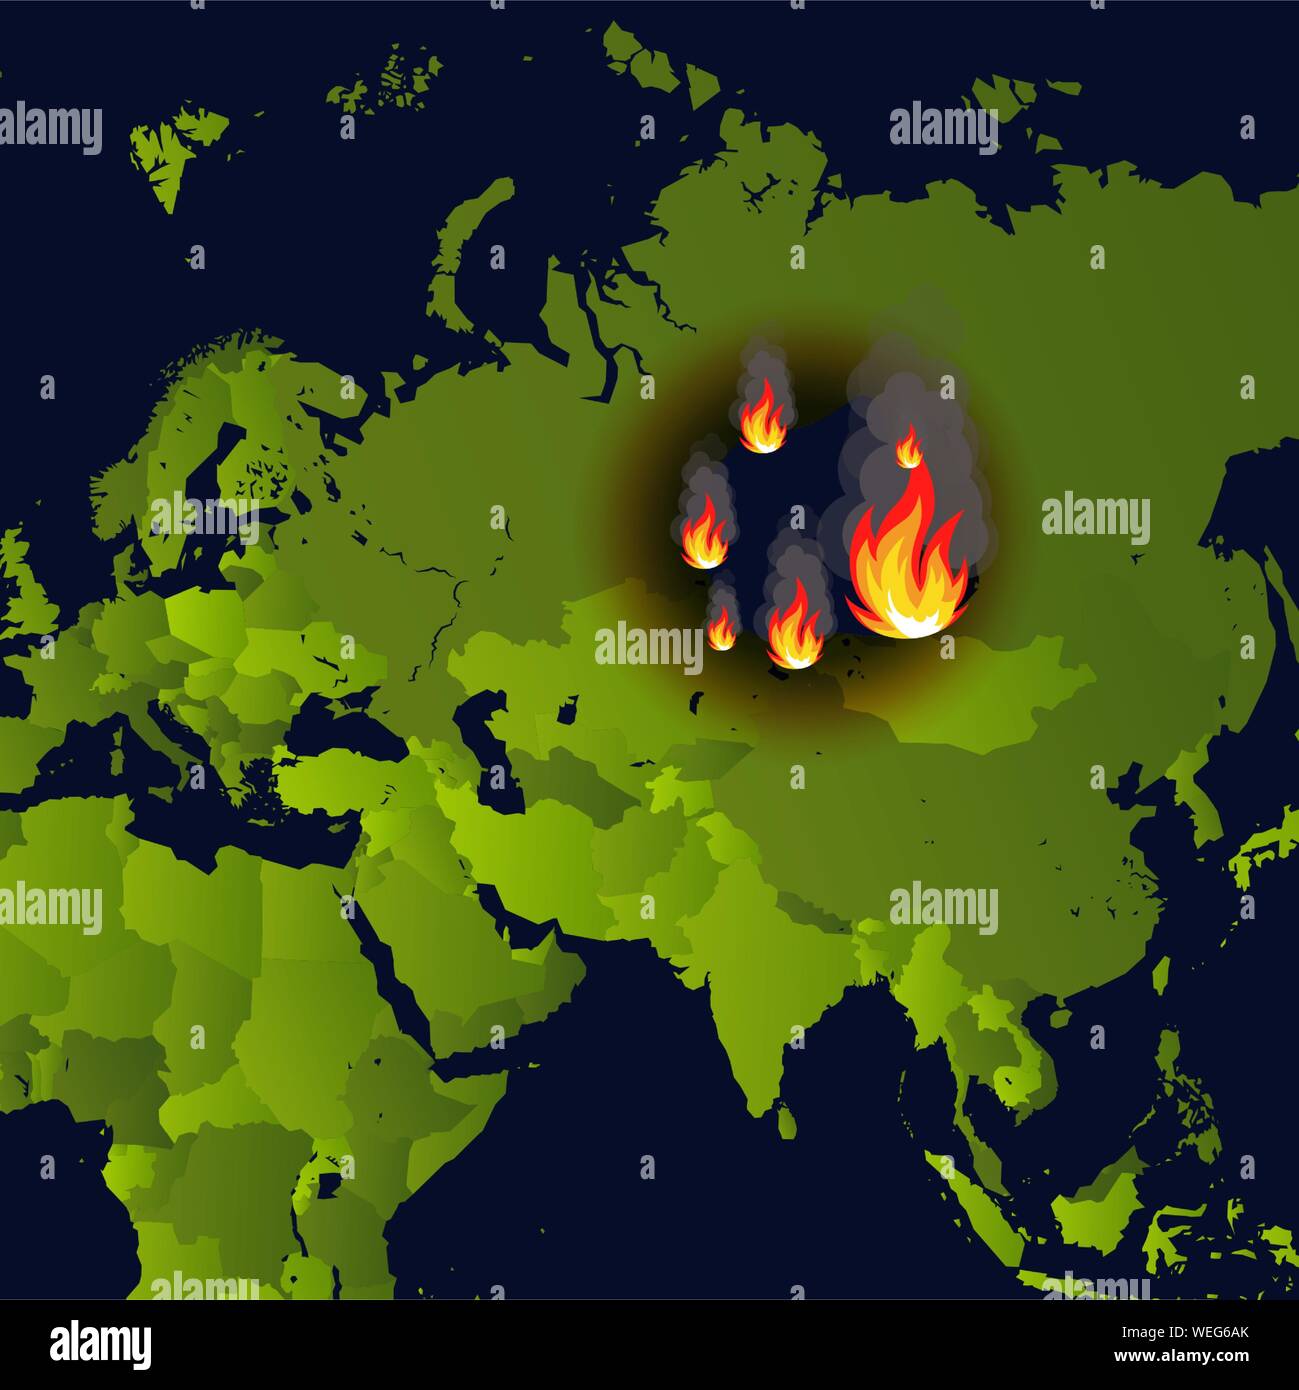 Waldbrände Banner, Kamin auf Karte anzeigen Katastrophe im russischen Sibirien Nachrichten, Papier, das brennt raucht und Qualmt aus Feuer, Vector Illustration. Stock Vektor